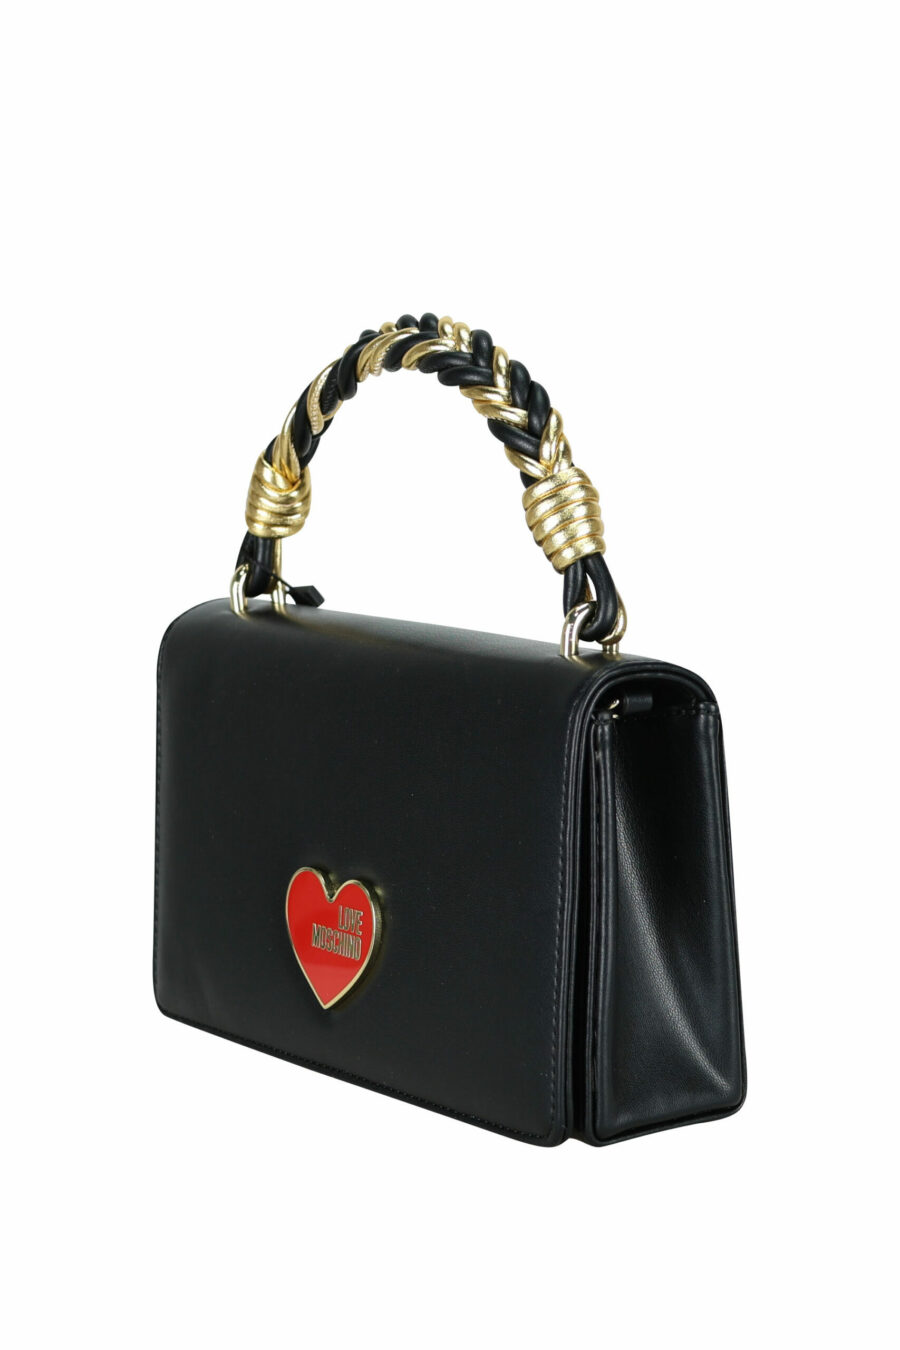 Black shoulder bag with red heart logo - 107947 scaled